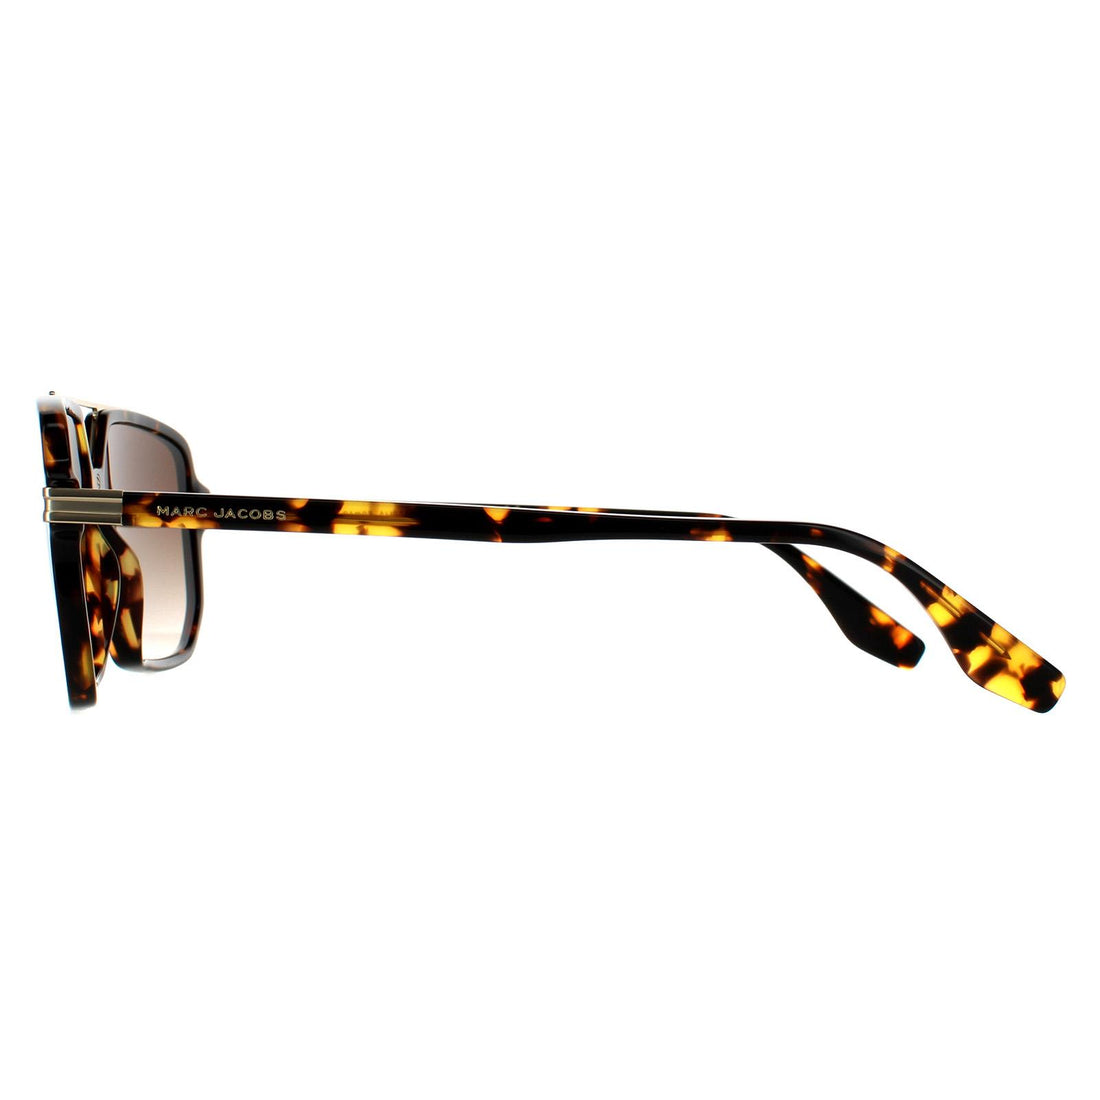 Marc Jacobs MARC 417/S Sunglasses